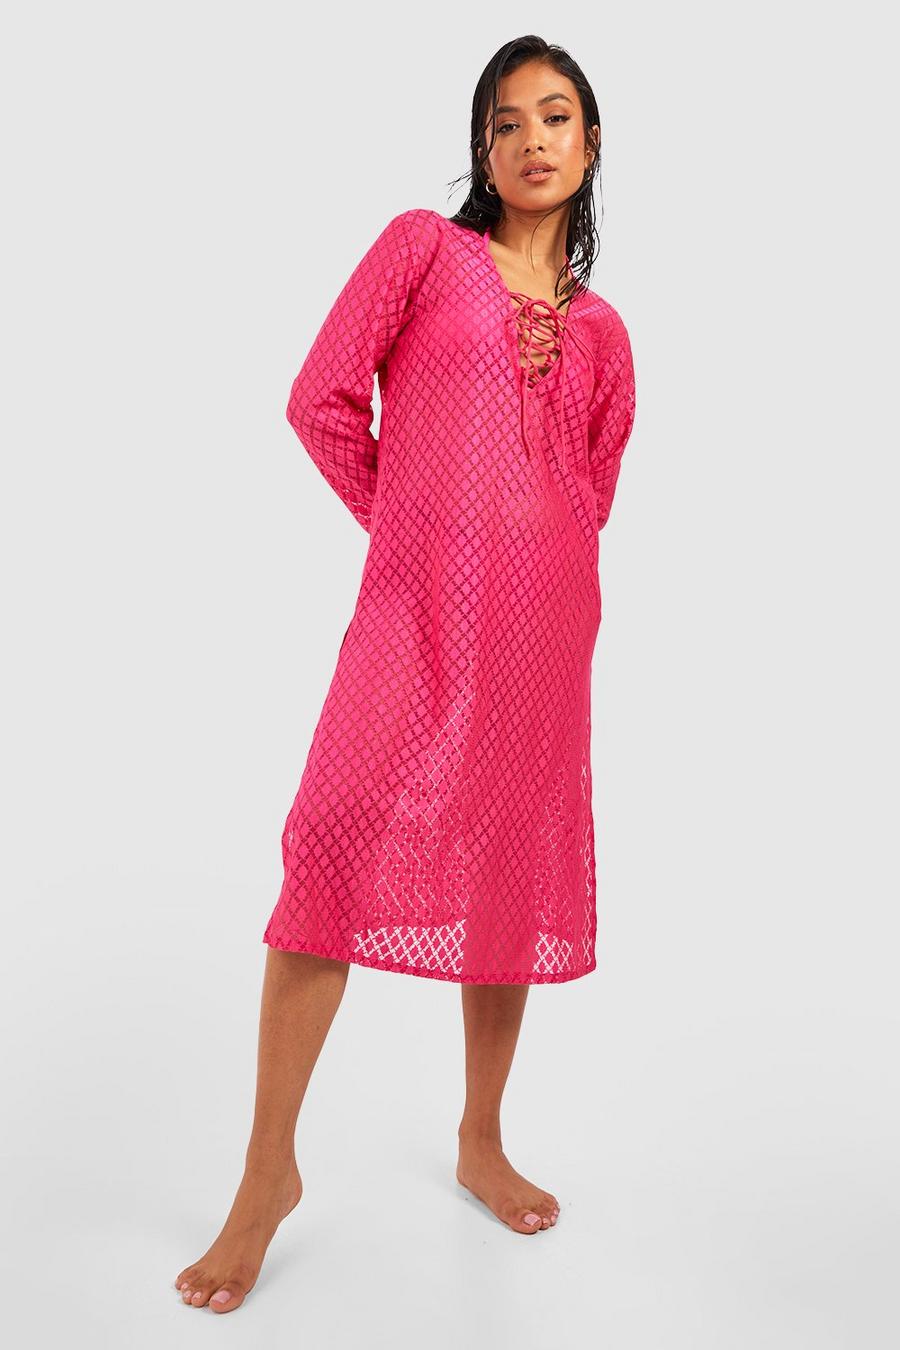 Hot pink Petite Lace Up Crochet Beach Midi Dress